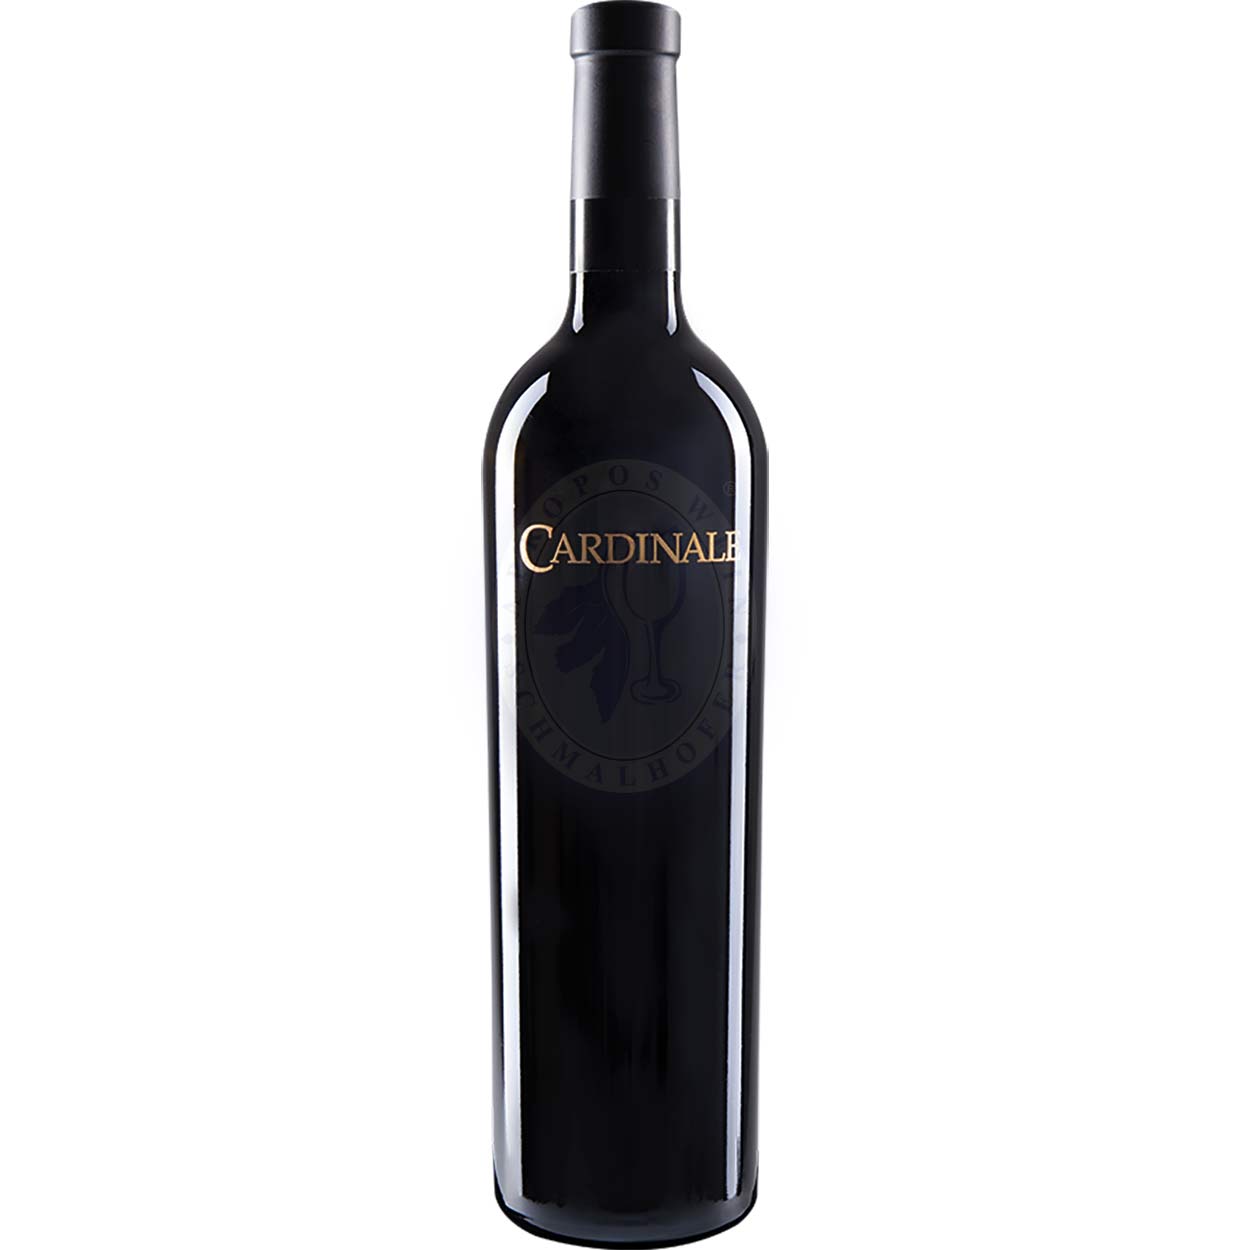 Cardinale 2014 Cardinale Winery 0,75l